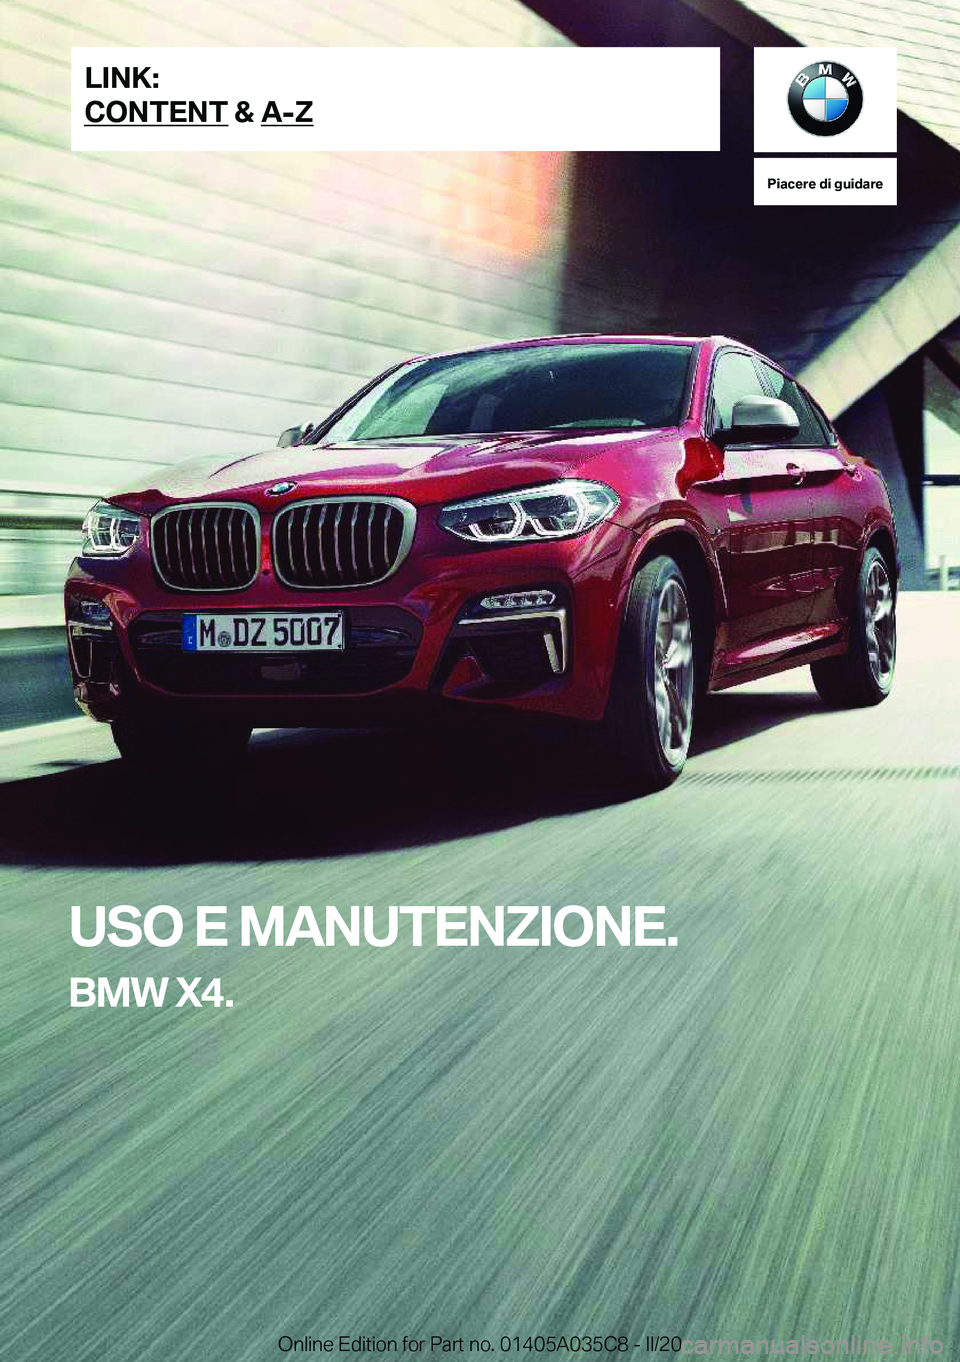 BMW X4 2020  Libretti Di Uso E manutenzione (in Italian) �P�i�a�c�e�r�e��d�i��g�u�i�d�a�r�e
�U�S�O��E��M�A�N�U�T�E�N�Z�I�O�N�E�.
�B�M�W��X�4�.�L�I�N�K�:
�C�O�N�T�E�N�T��&��A�-�Z�O�n�l�i�n�e��E�d�i�t�i�o�n��f�o�r��P�a�r�t��n�o�.��0�1�4�0�5�A�0�3�